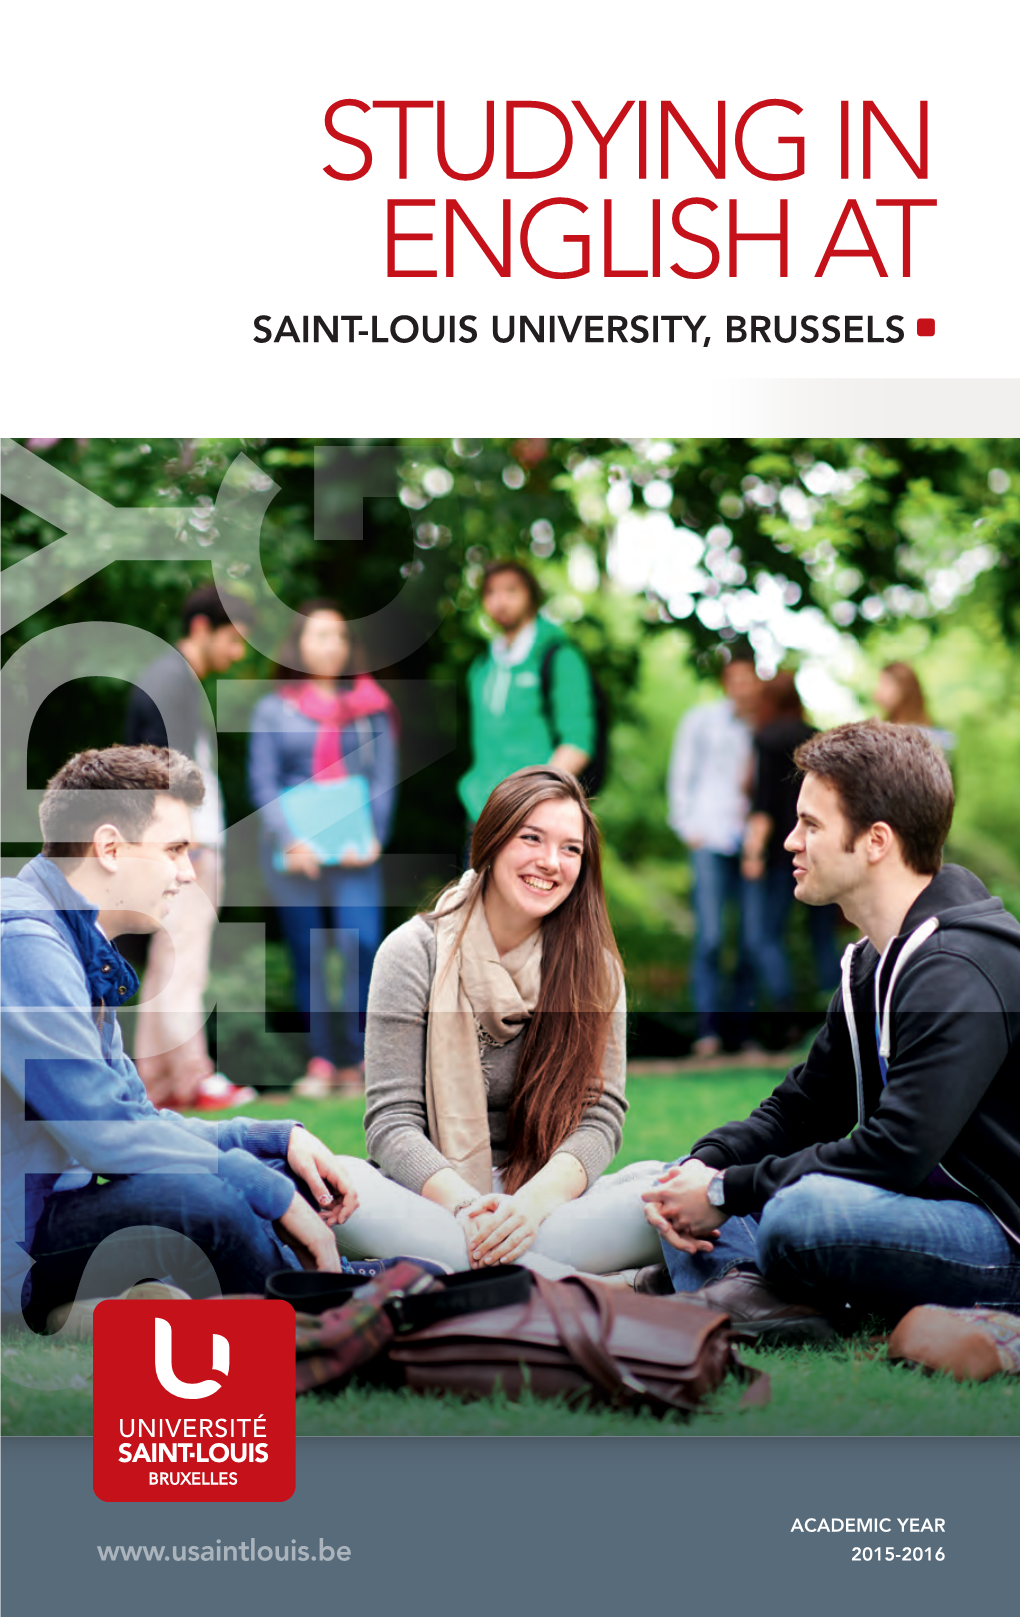 Université Saint-Louis